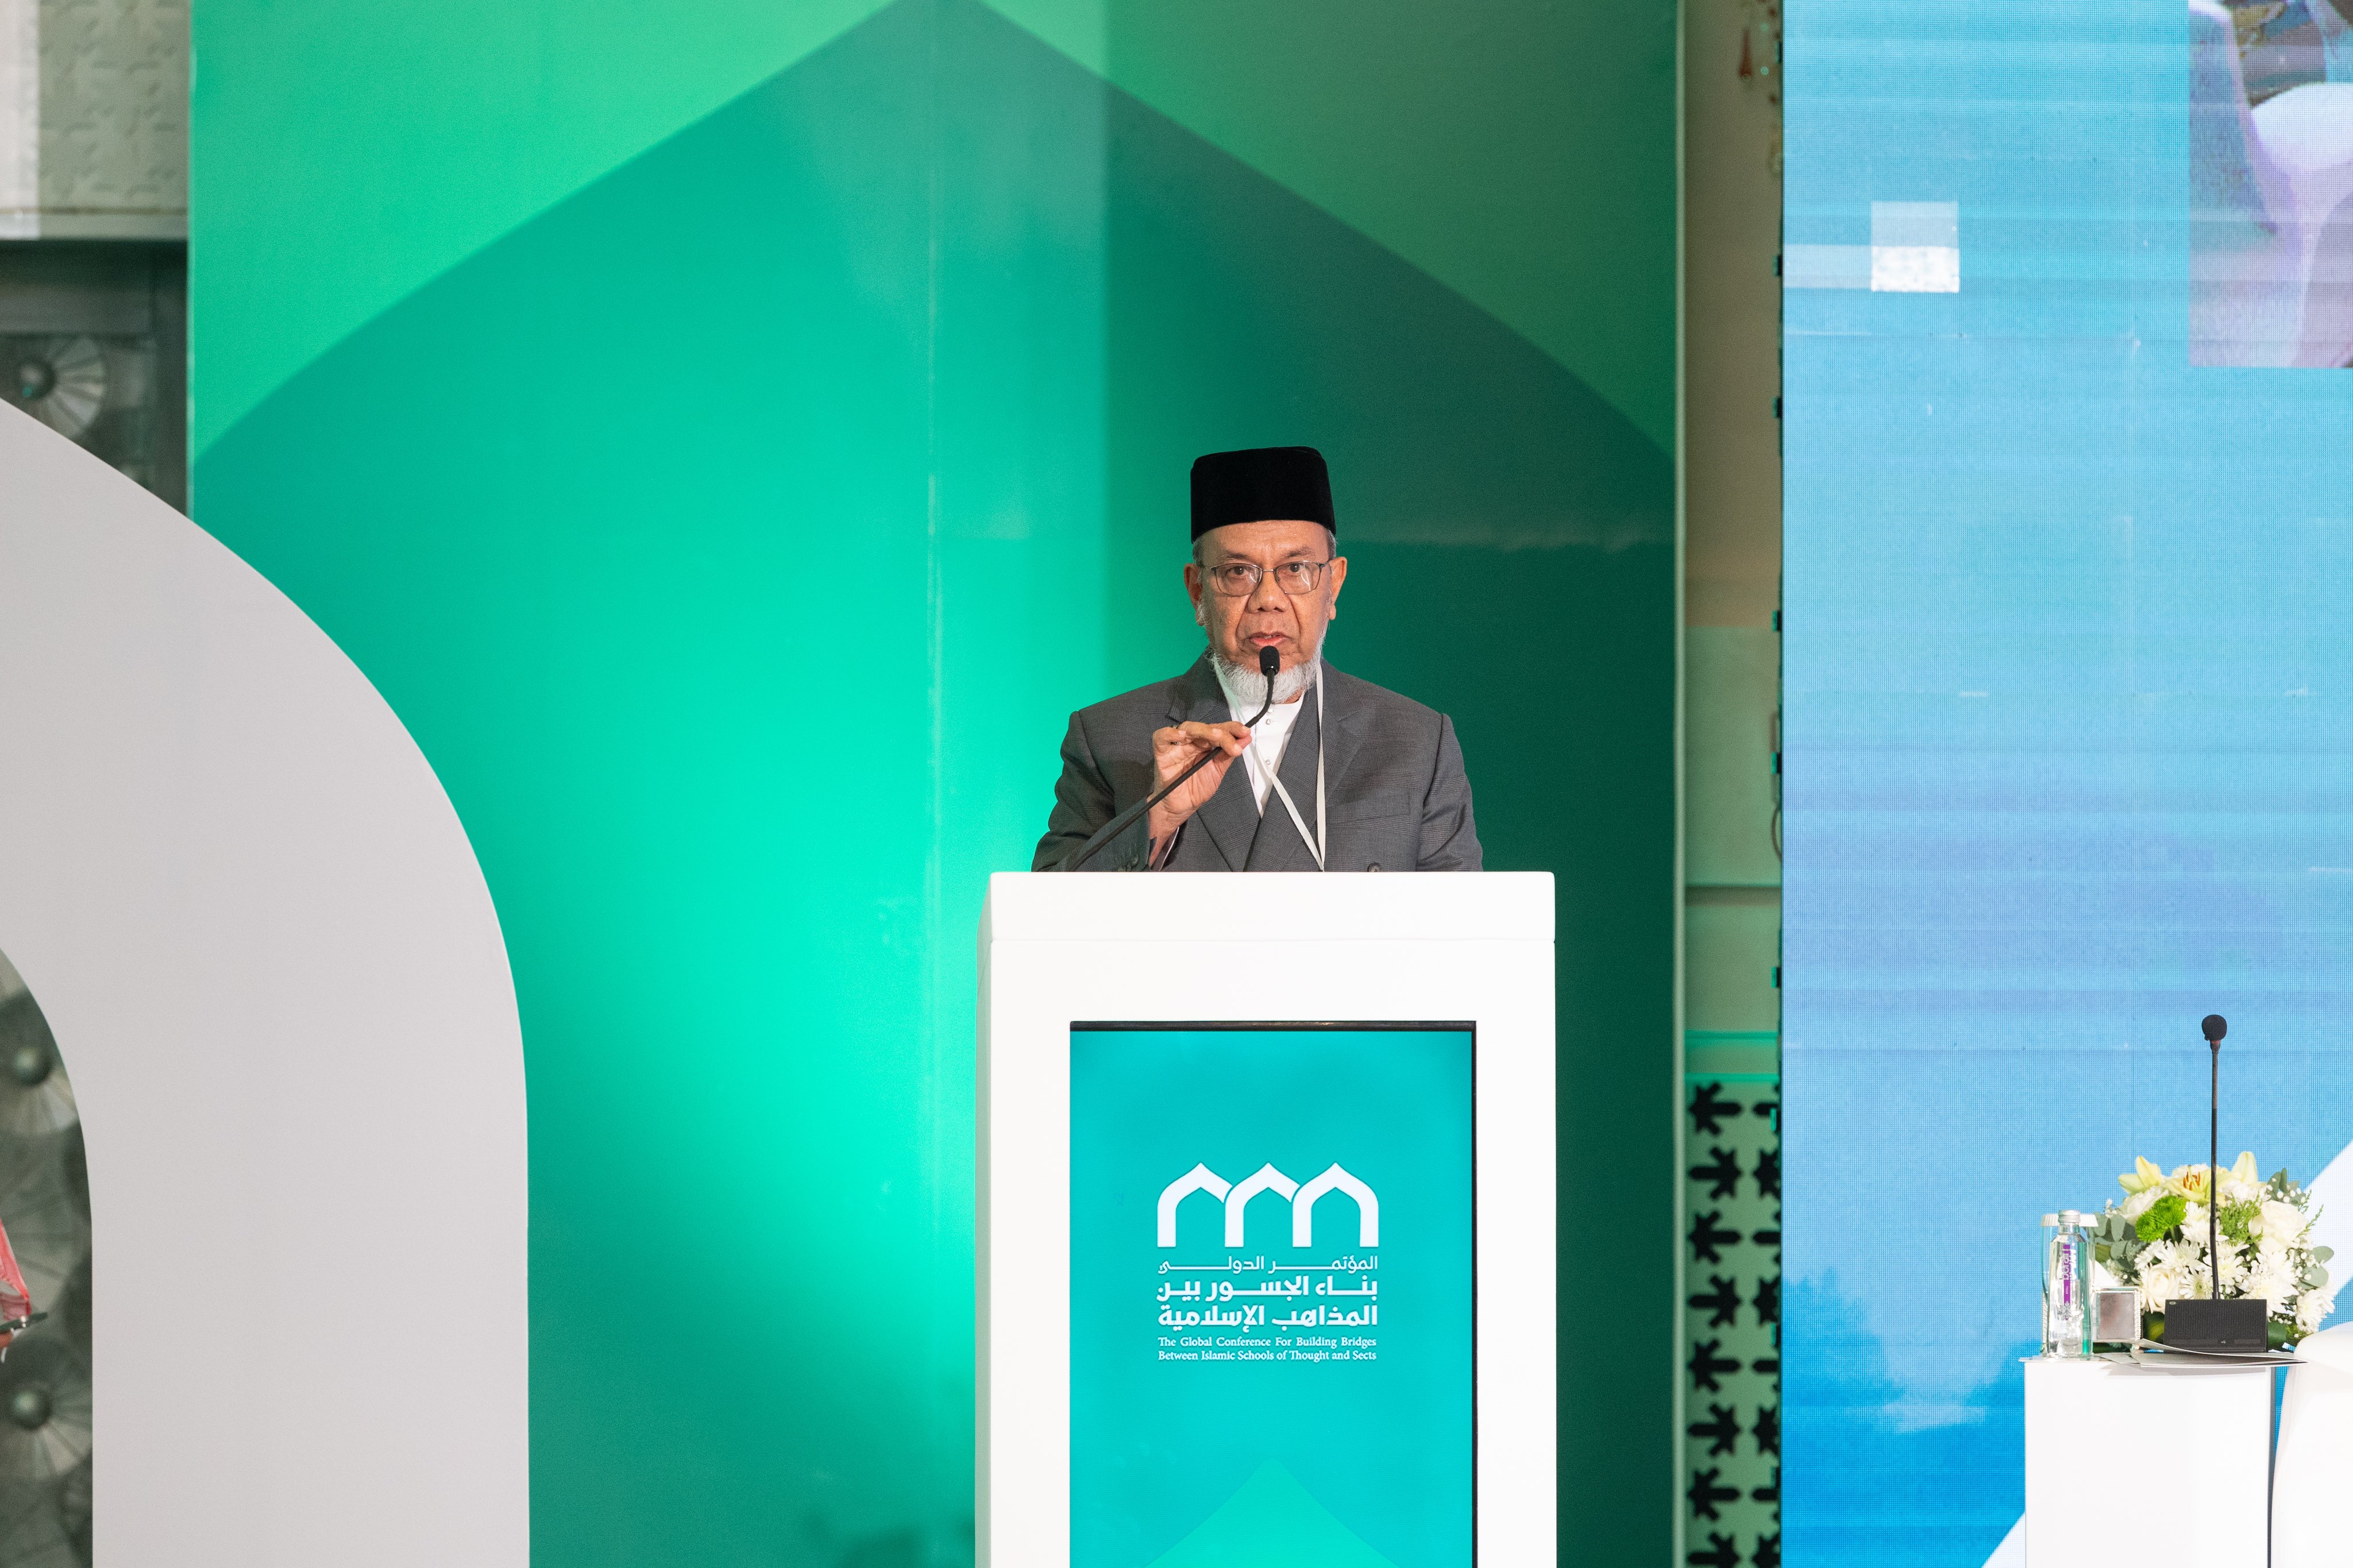 جمعيت علمائے ملائیشیا کے صدر شیخ وان محمد بن عبد العزیز ”اسلامی مذاہب کے درمیان پلوں کی تعمیر“ کانفرنس کےافتتاحی اجلاس سے خطاب کرتے ہوئے: